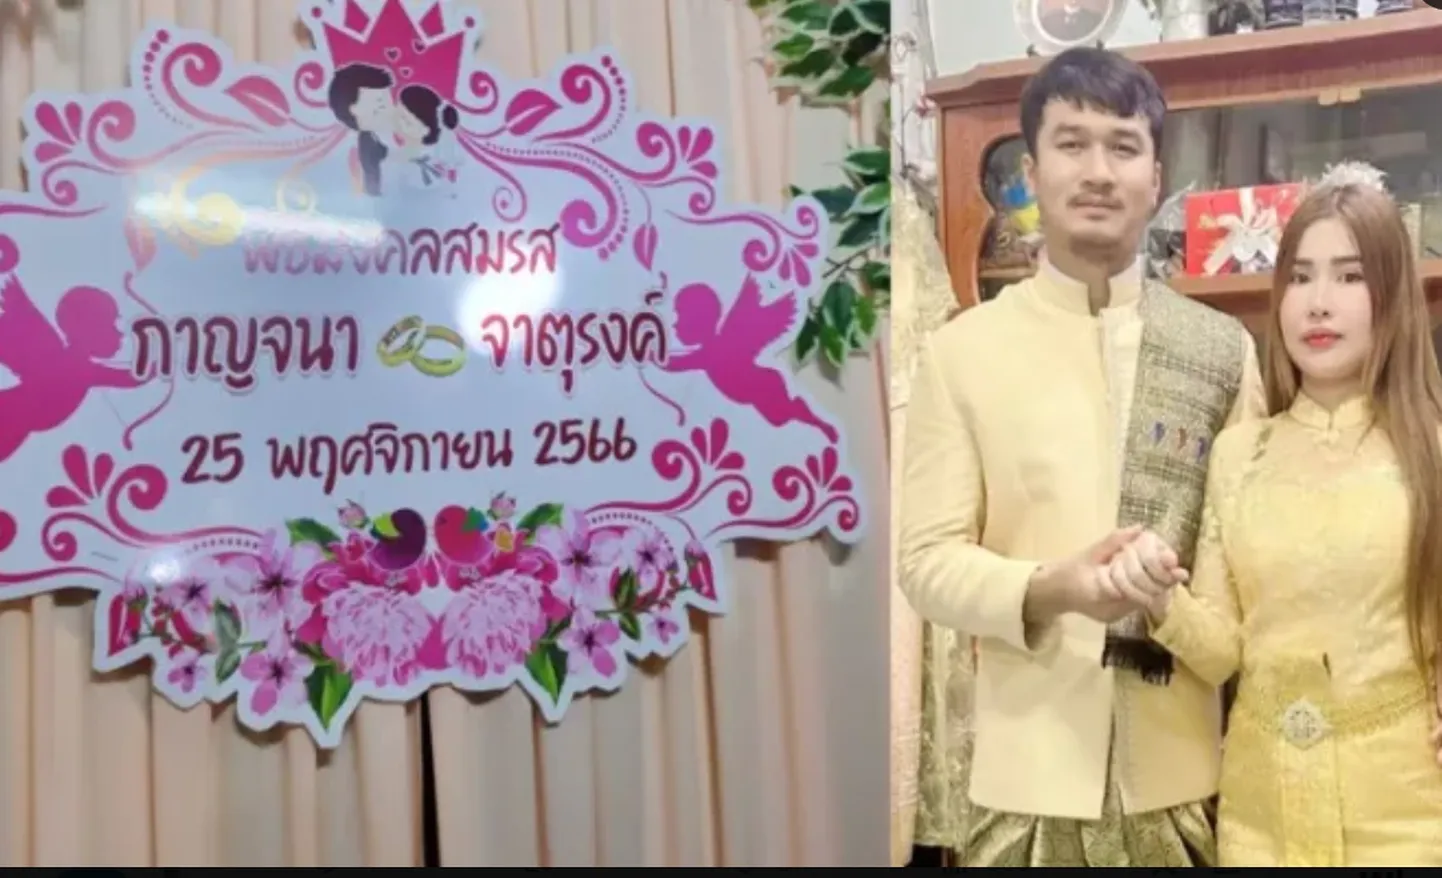 На свадьбе в Таиланде жених застрелил свою невесту и еще трех человек